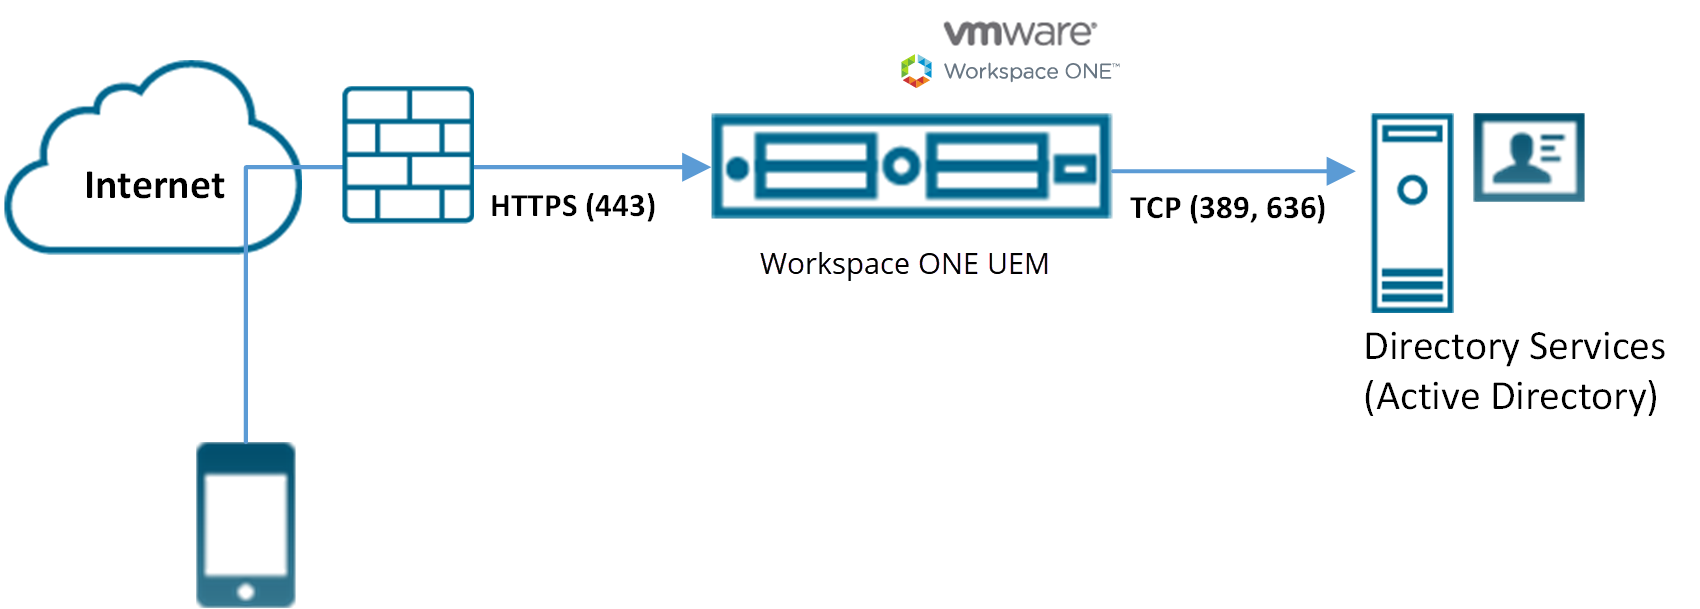 На этой схеме показано устройство, которое получает доступ к консоли UEM через интернет через брандмауэр. В консоли UEM доступна служба каталогов.